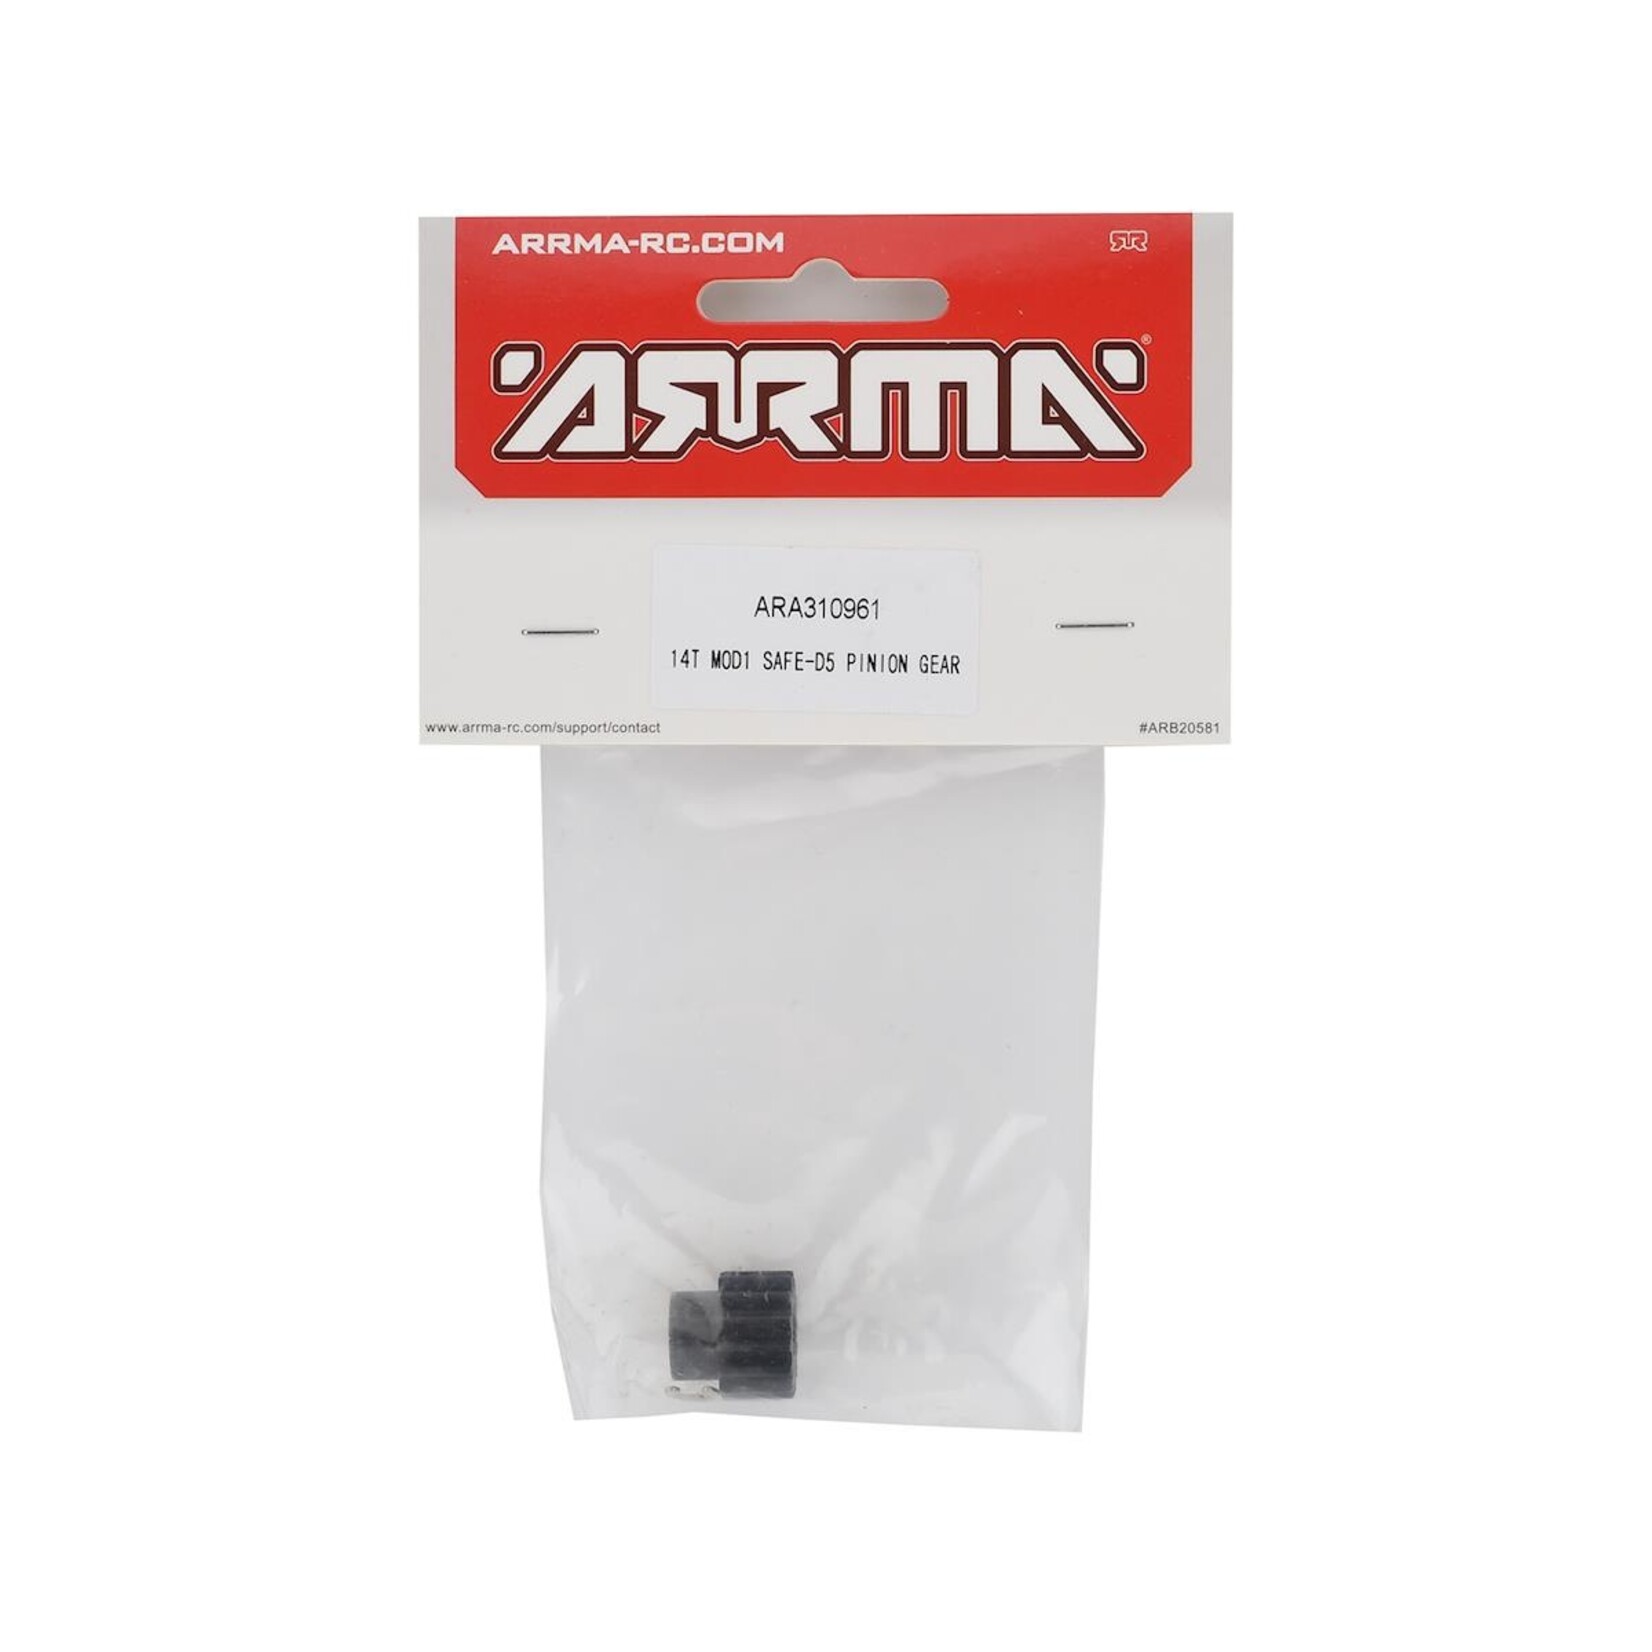 ARRMA Arrma Safe-D5 Mod1 Pinion Gear (14T) #ARA310961